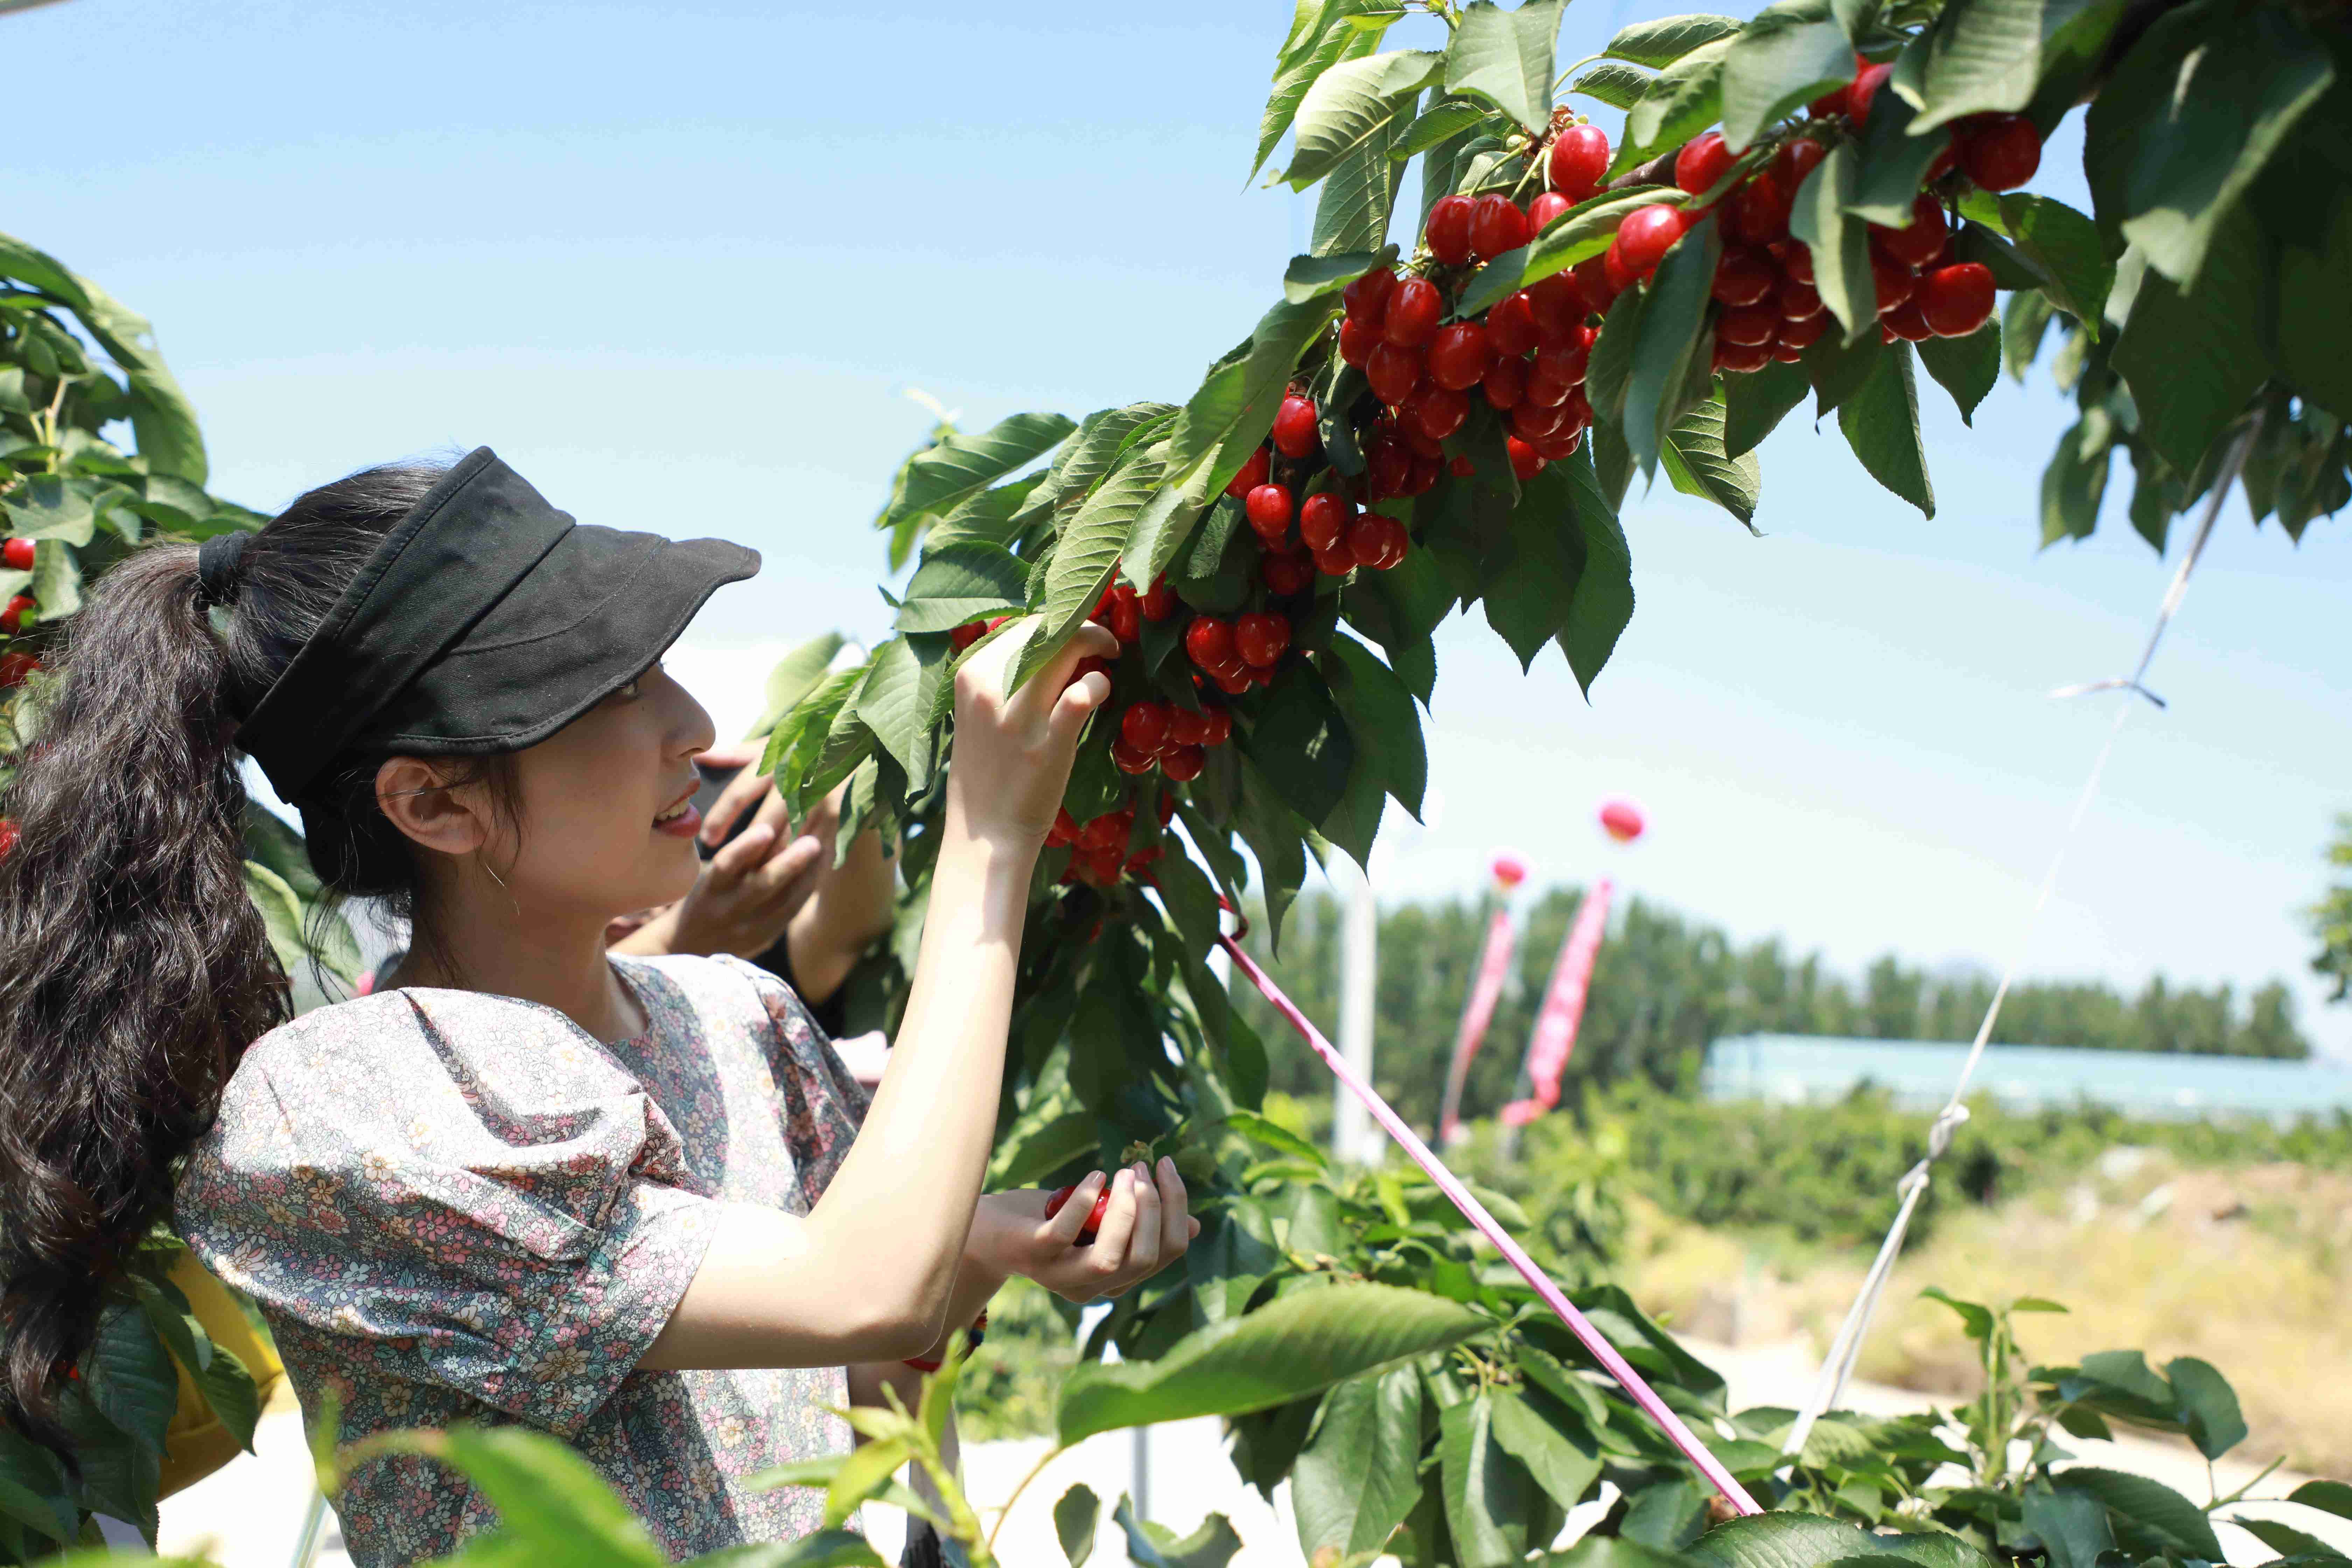 游客在易县塘湖镇生态樱桃种植园内采摘。 宿亚楠摄